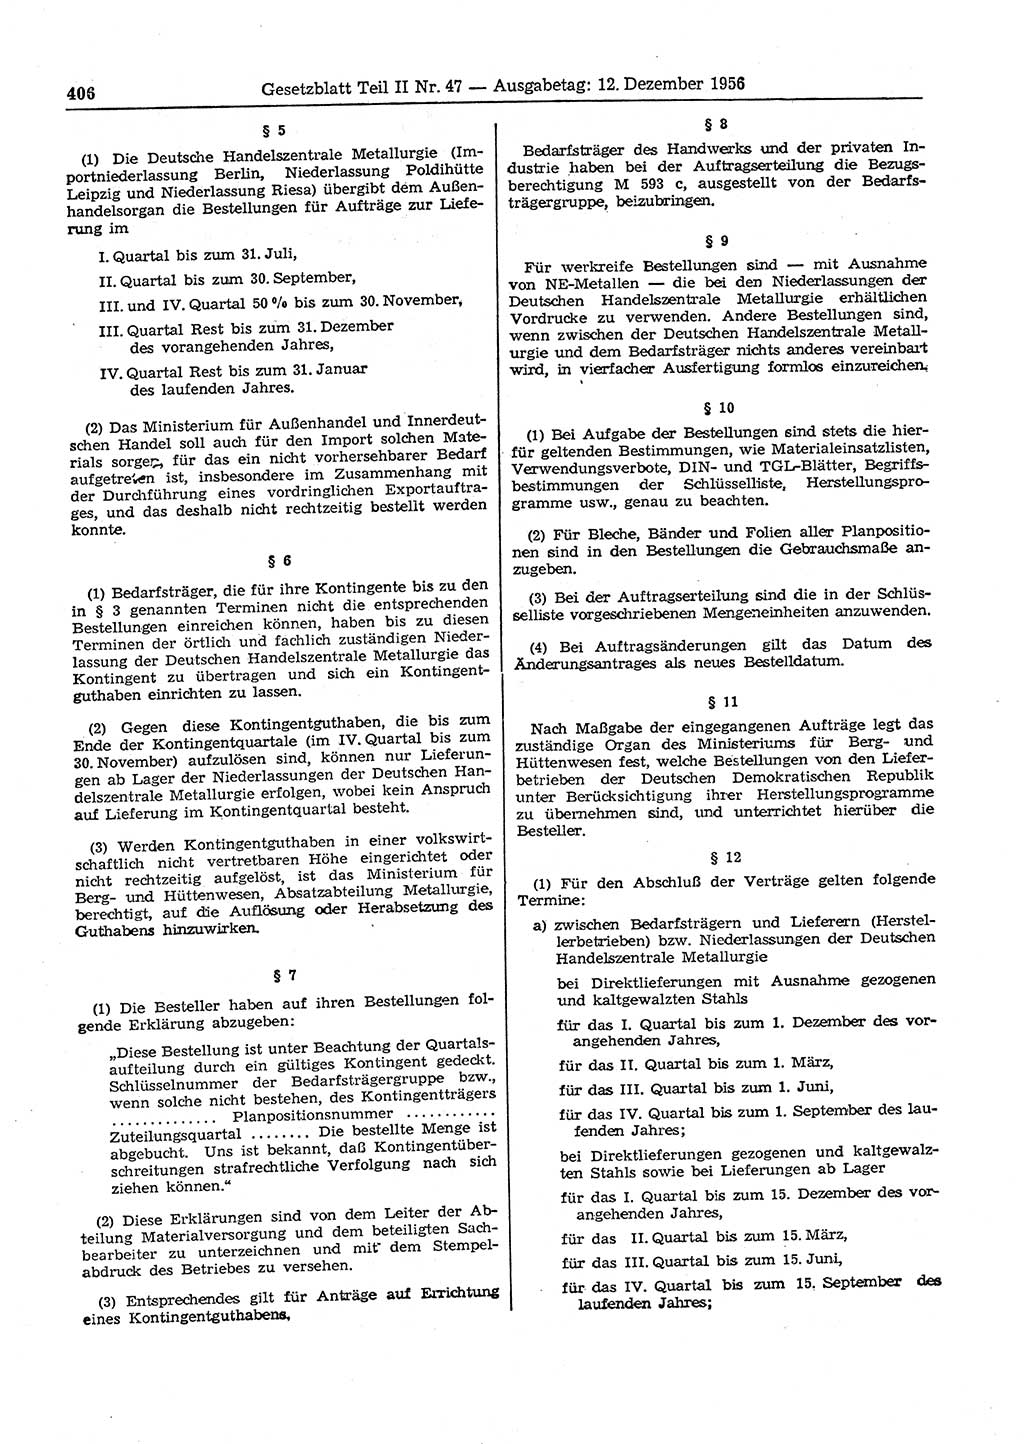 Gesetzblatt (GBl.) der Deutschen Demokratischen Republik (DDR) Teil ⅠⅠ 1956, Seite 406 (GBl. DDR ⅠⅠ 1956, S. 406)